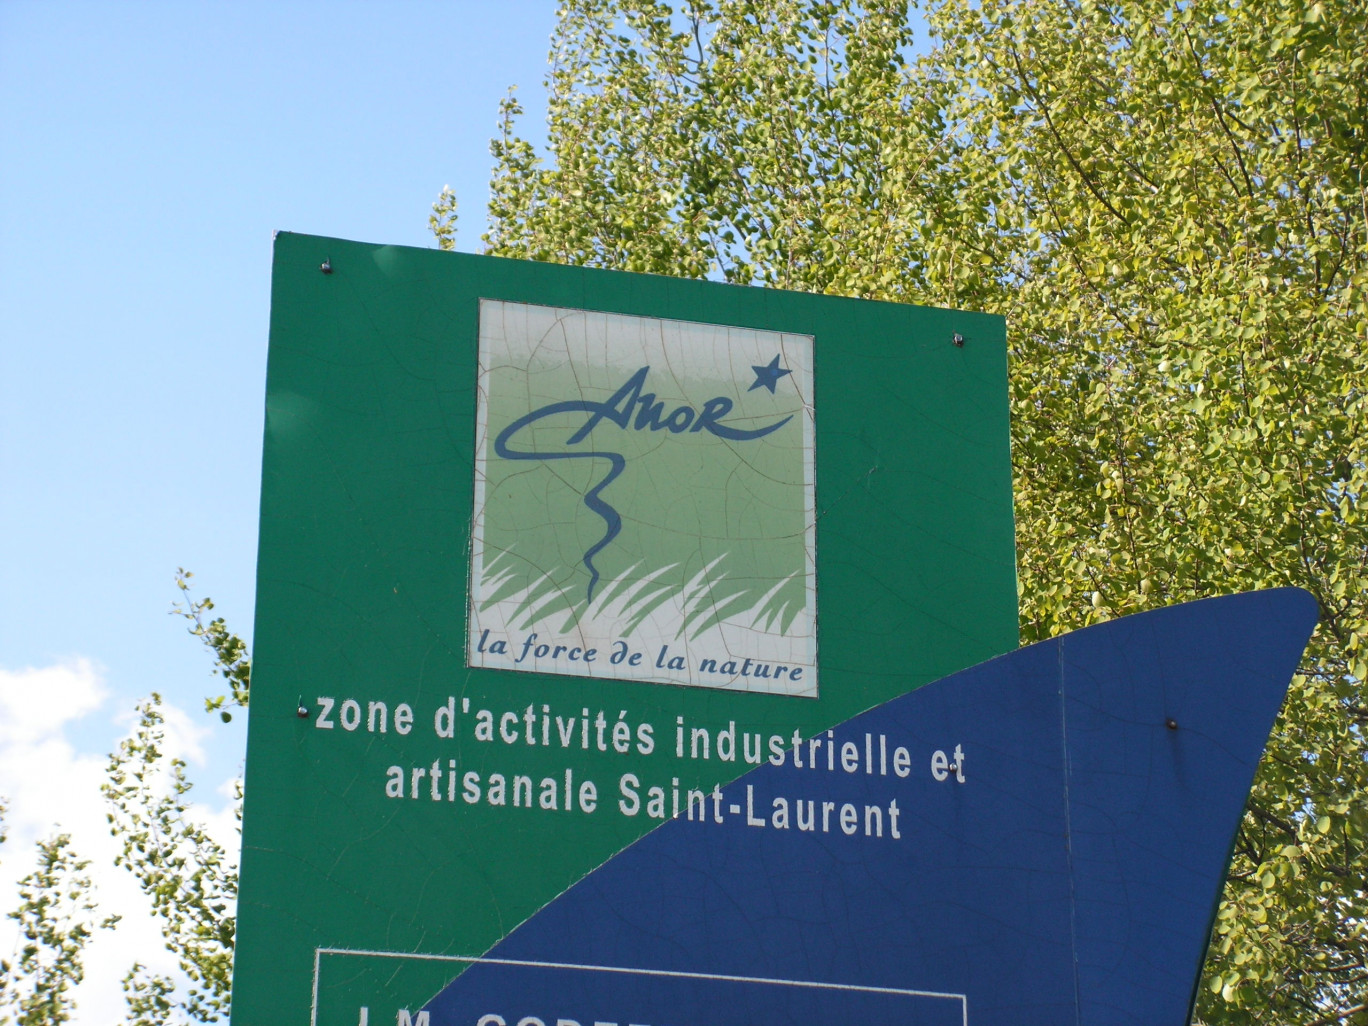 C’est dans l’actuelle zone d’activités du hameau Saint-Laurent, au nord d’Anor, qu’est prévu ce projet de site industriel de fabrication de granulés de bois.